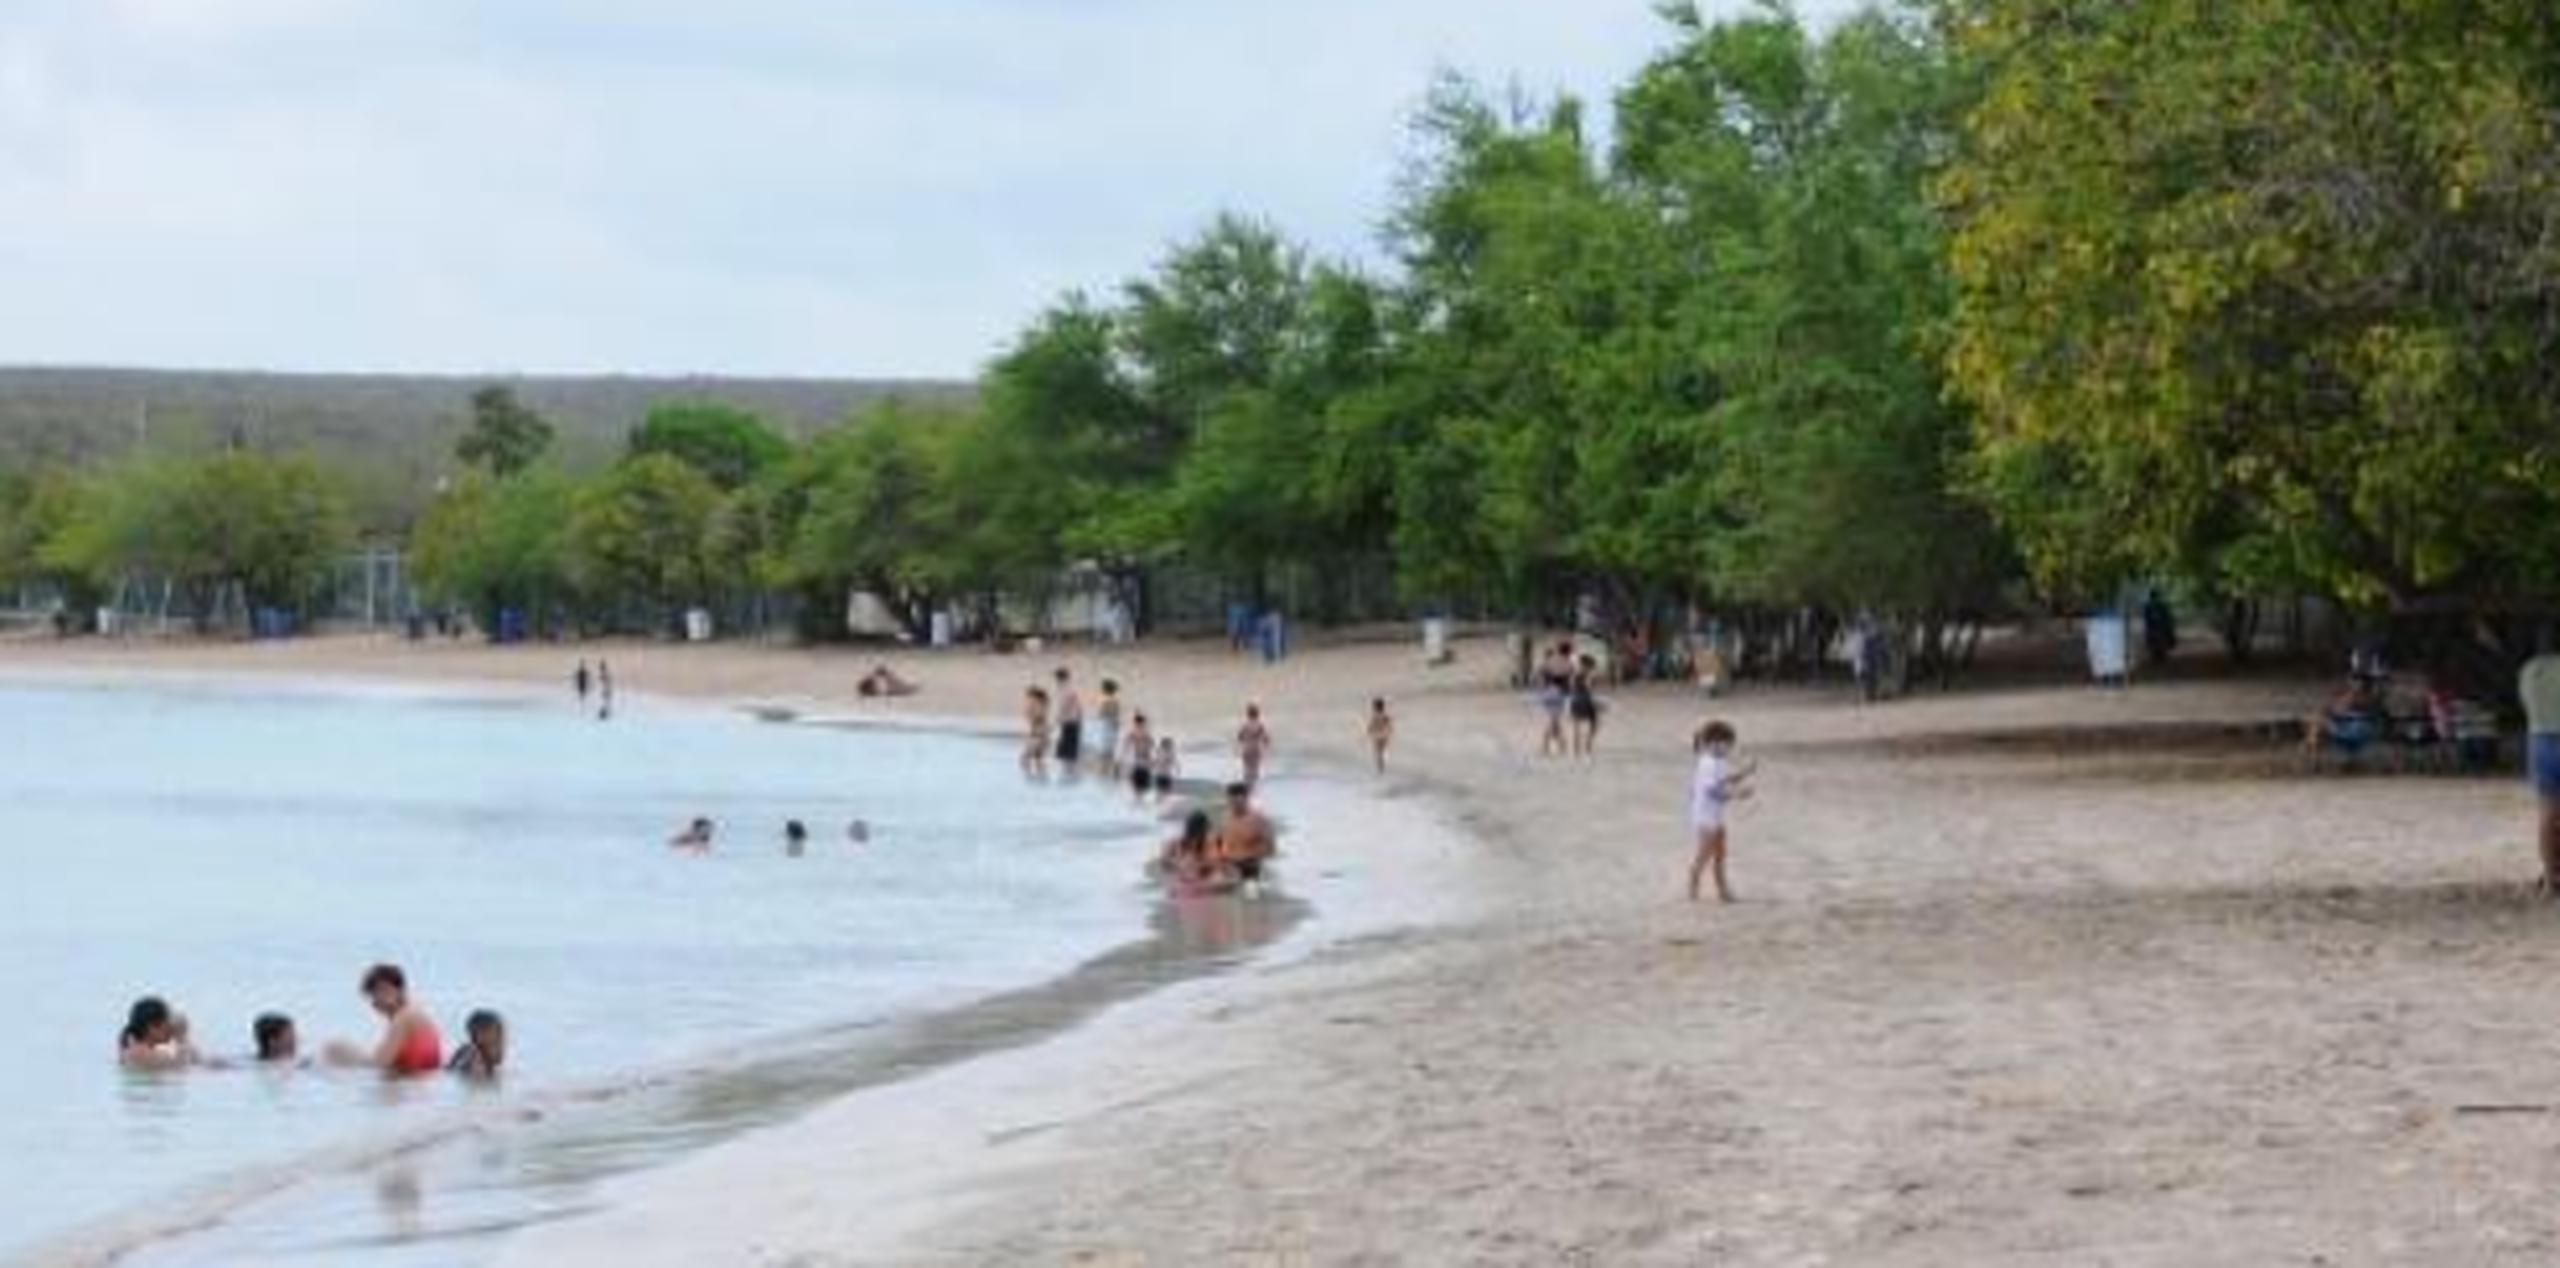 Las playas incluyen el Balneario de Patillas, Playa Santa en Guánica, Balneario de Rincón, Playa Muelle de Arecibo, Playa Guayanés en Yabucoa y Playita del Condado en San Juan. (Archivo)